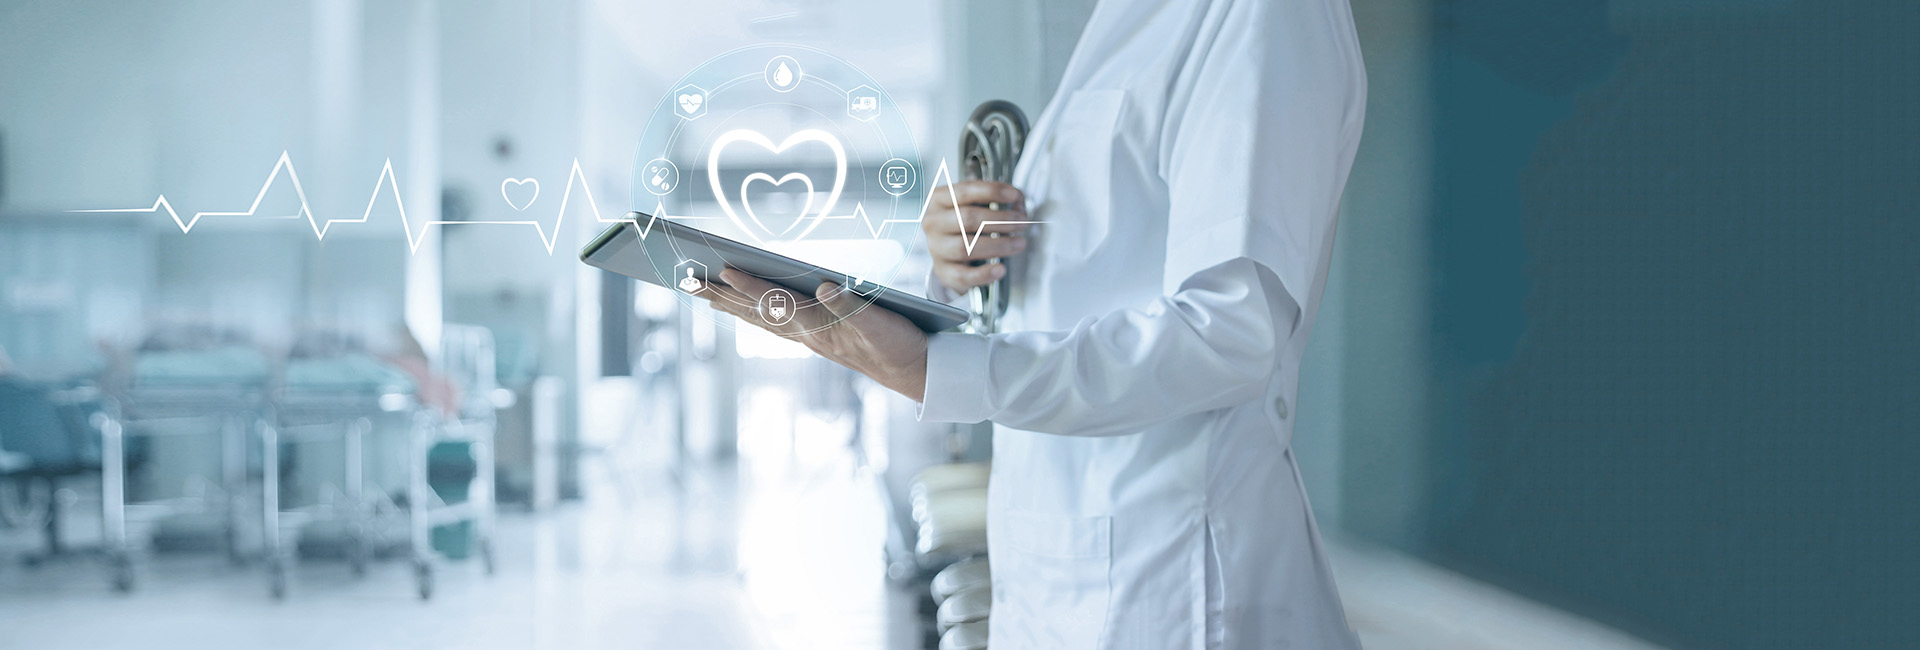 Reha-Forschung: Ärztin hält Tablet auf dem gesundheitsbezogene Symbole und Datenkurven digital dargestellt sind